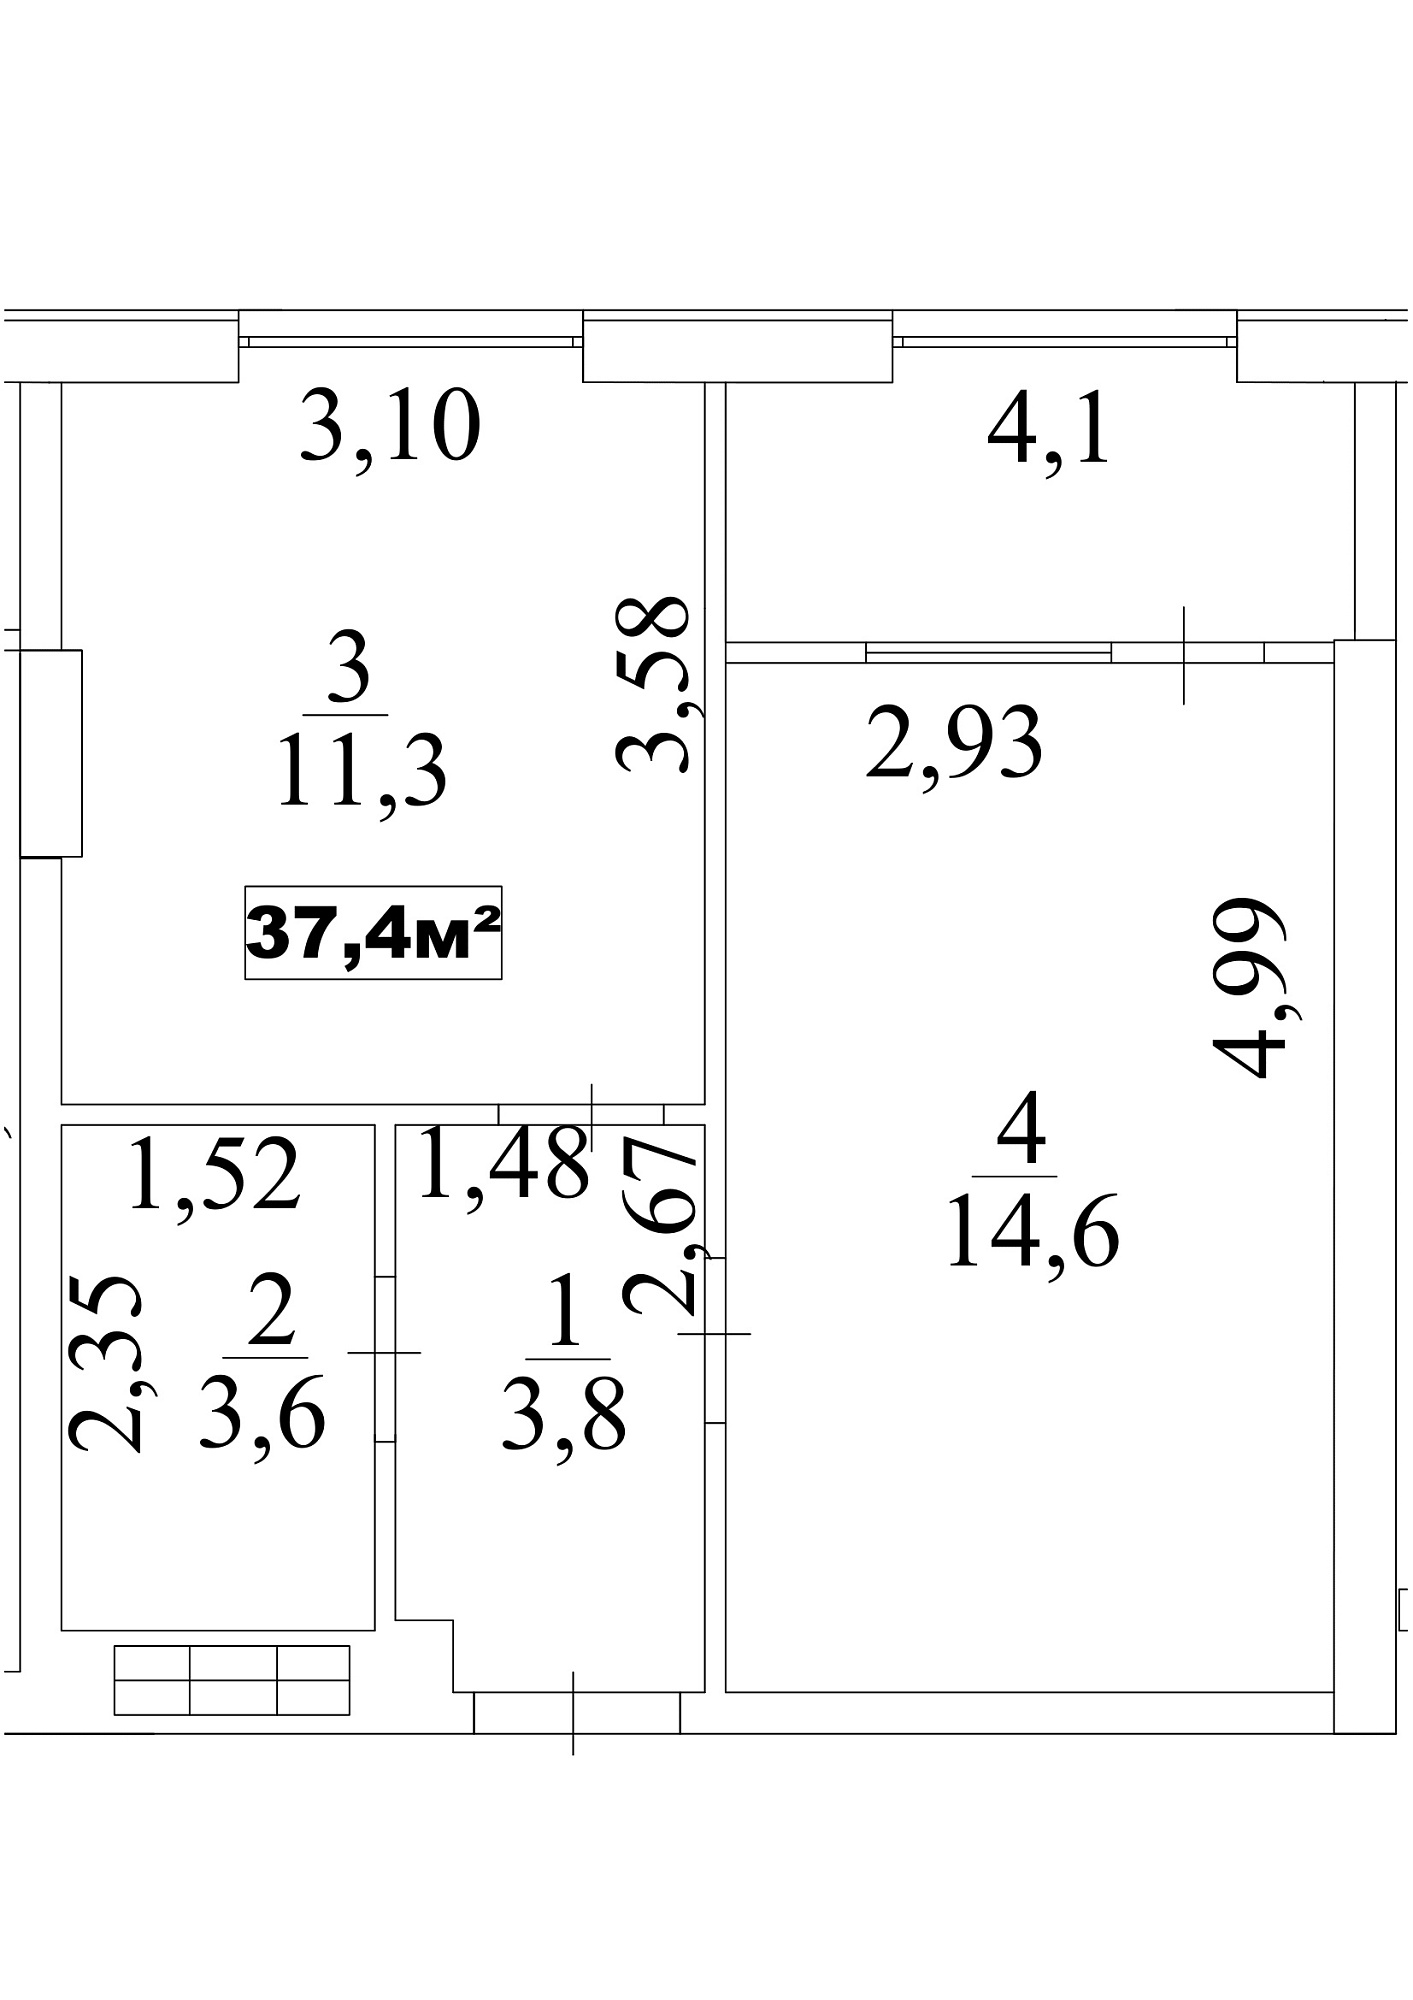 Планировка 1-к квартира площей 37.4м2, AB-10-08/0070а.